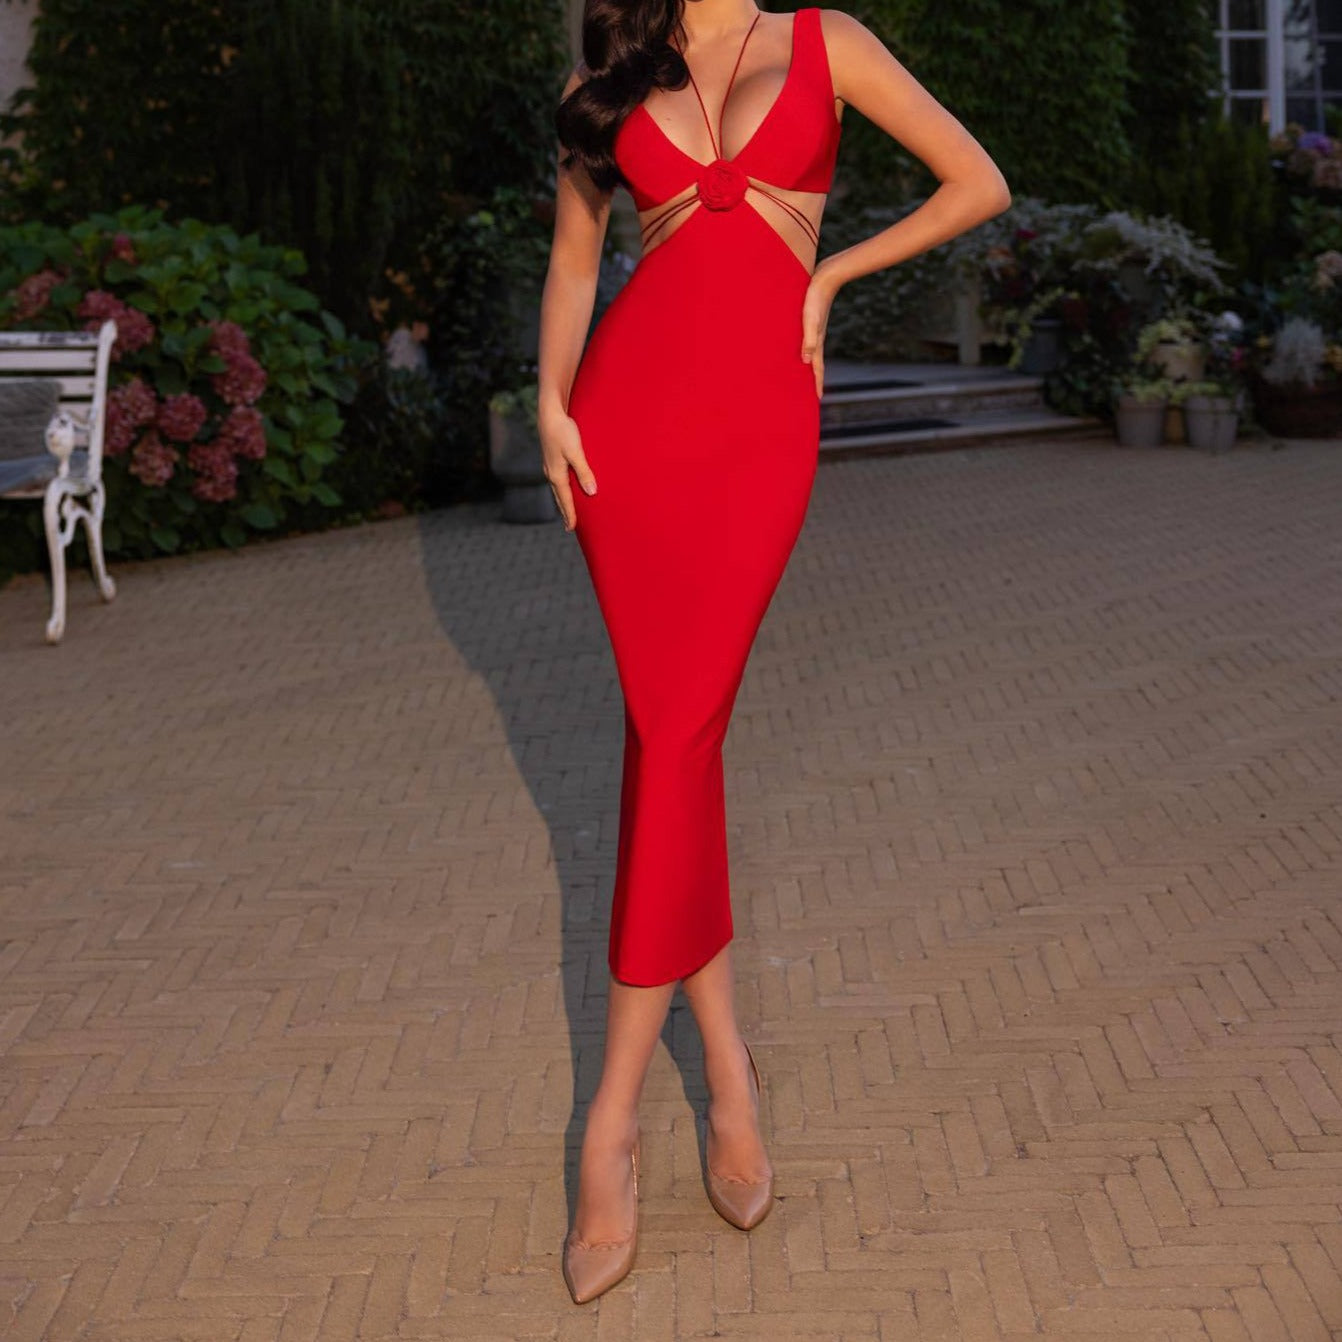 Hot Fashionista Teresa Sleeveless Spaghetti Strap Flower Midi Dress